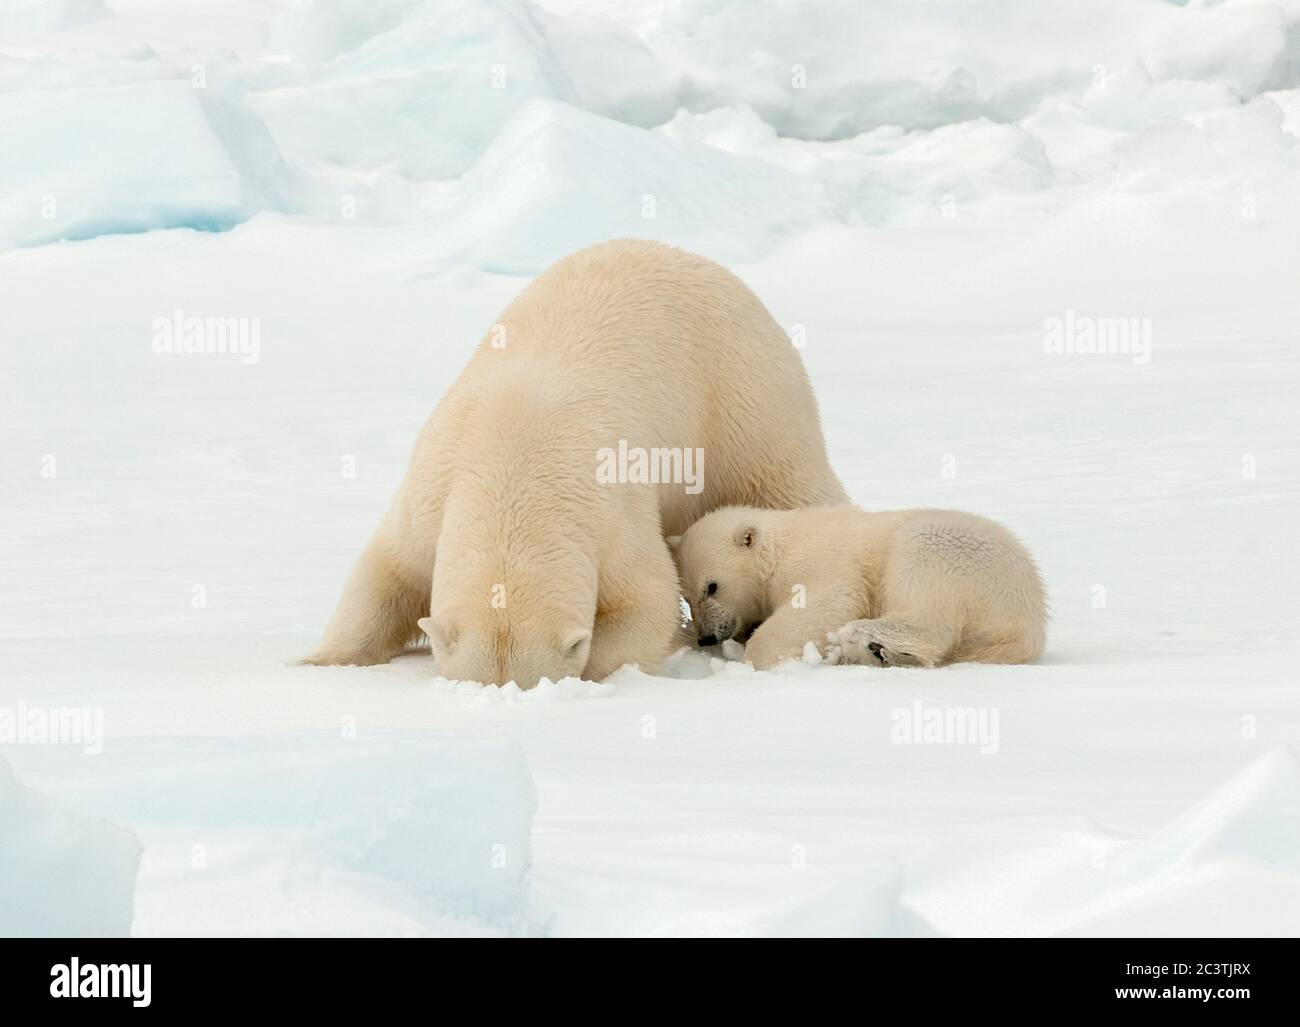 Orso polare (Ursus maritimus), Beatrice polare con cucciolo di orso in pezzetto di ghiaccio che guarda in un buco di ghiaccio per preda, Norvegia, Svalbard Foto Stock